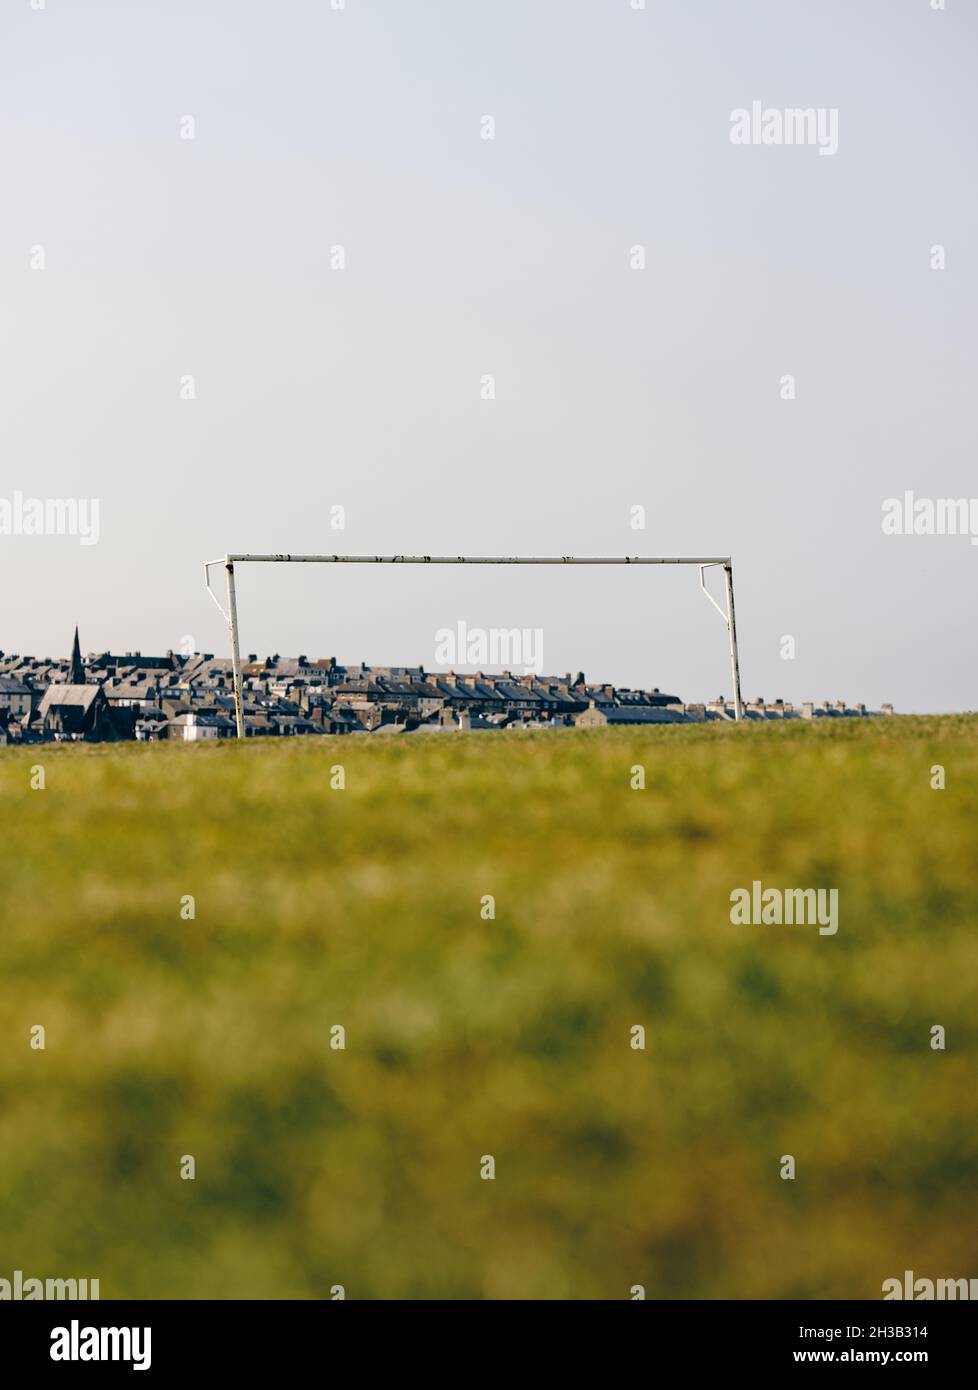 Ein Einzelfußball-/Fußballtor ohne Netz in einem leeren Sommerrasenfeld mit einer unbestimmten Stadt und Gebäuden im Hintergrund. Stockfoto